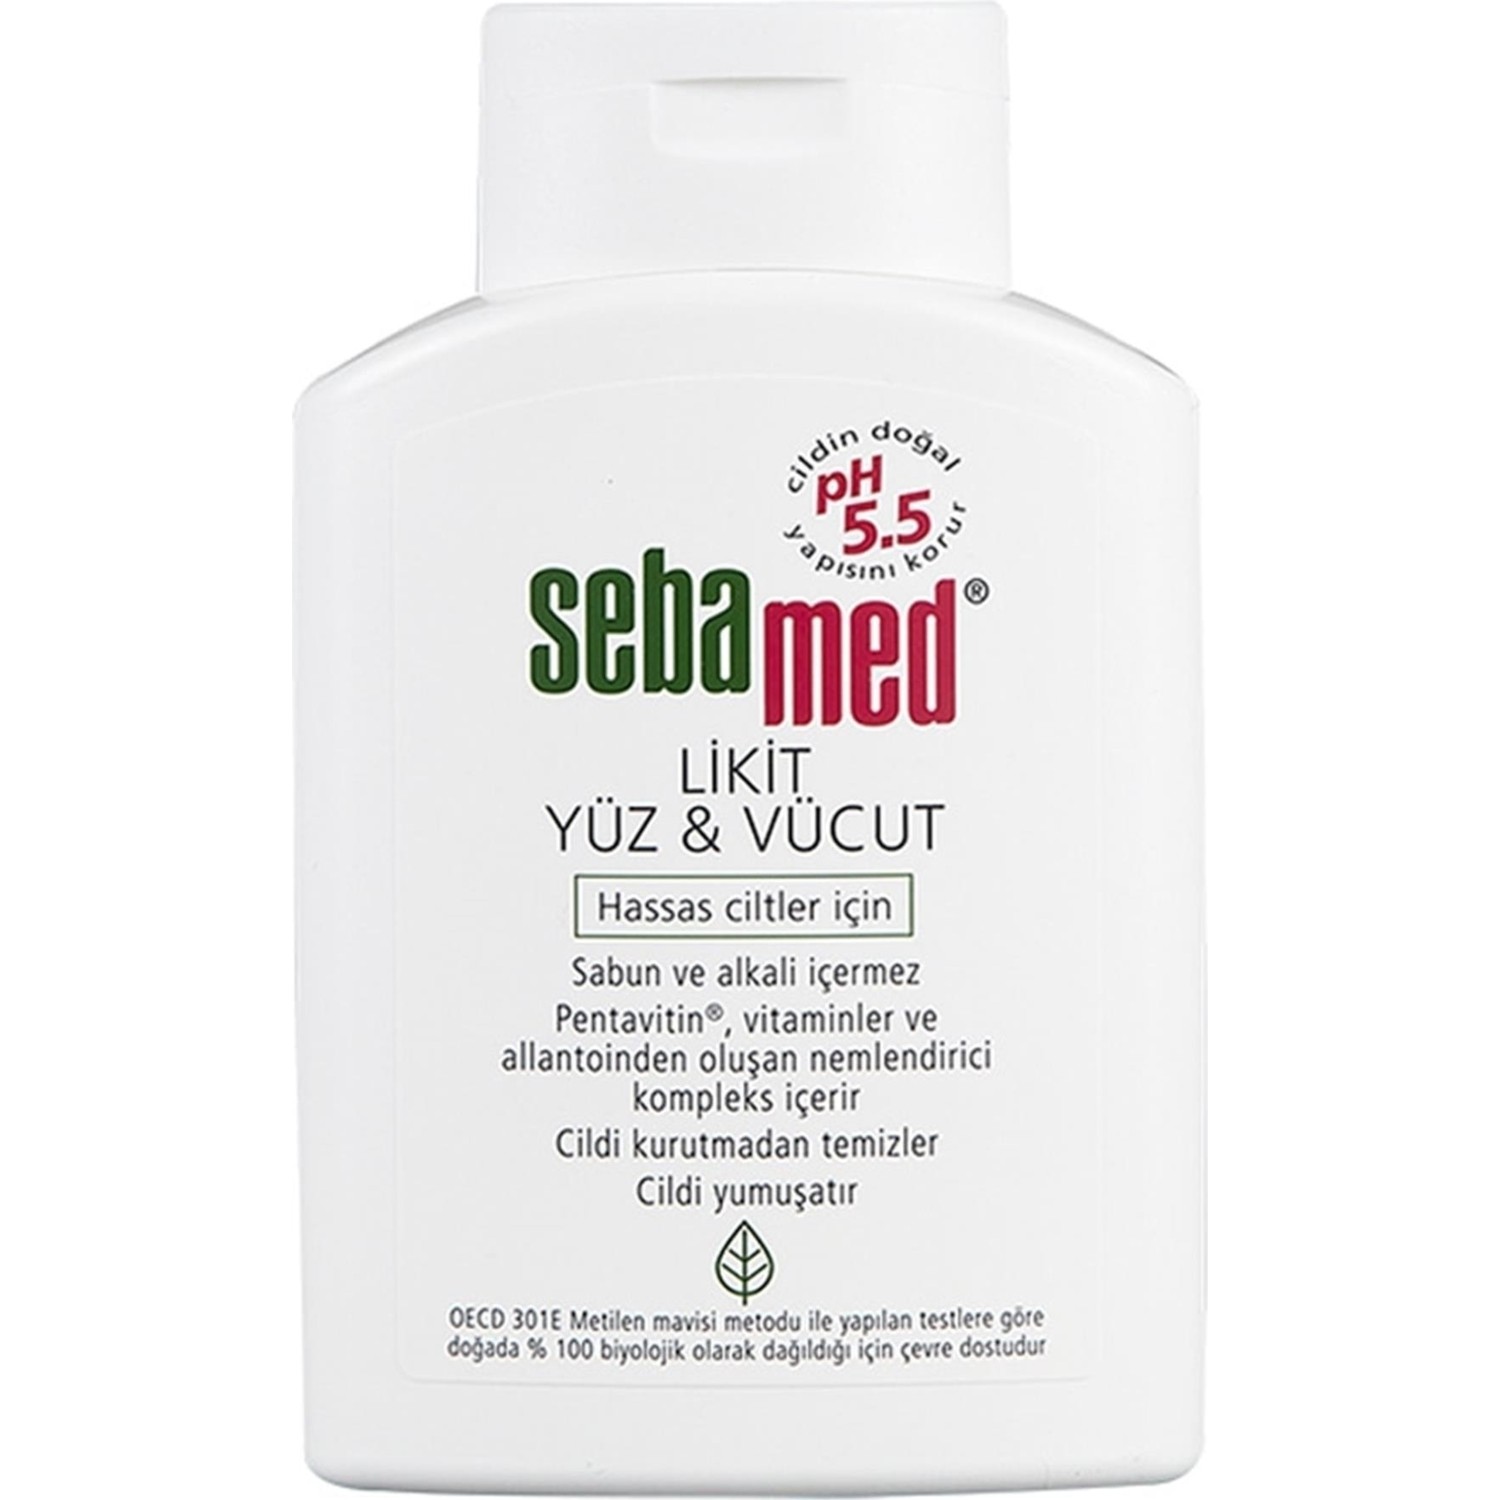 Очищающее средство Sebamed Liquid для лица и тела, 200 мл